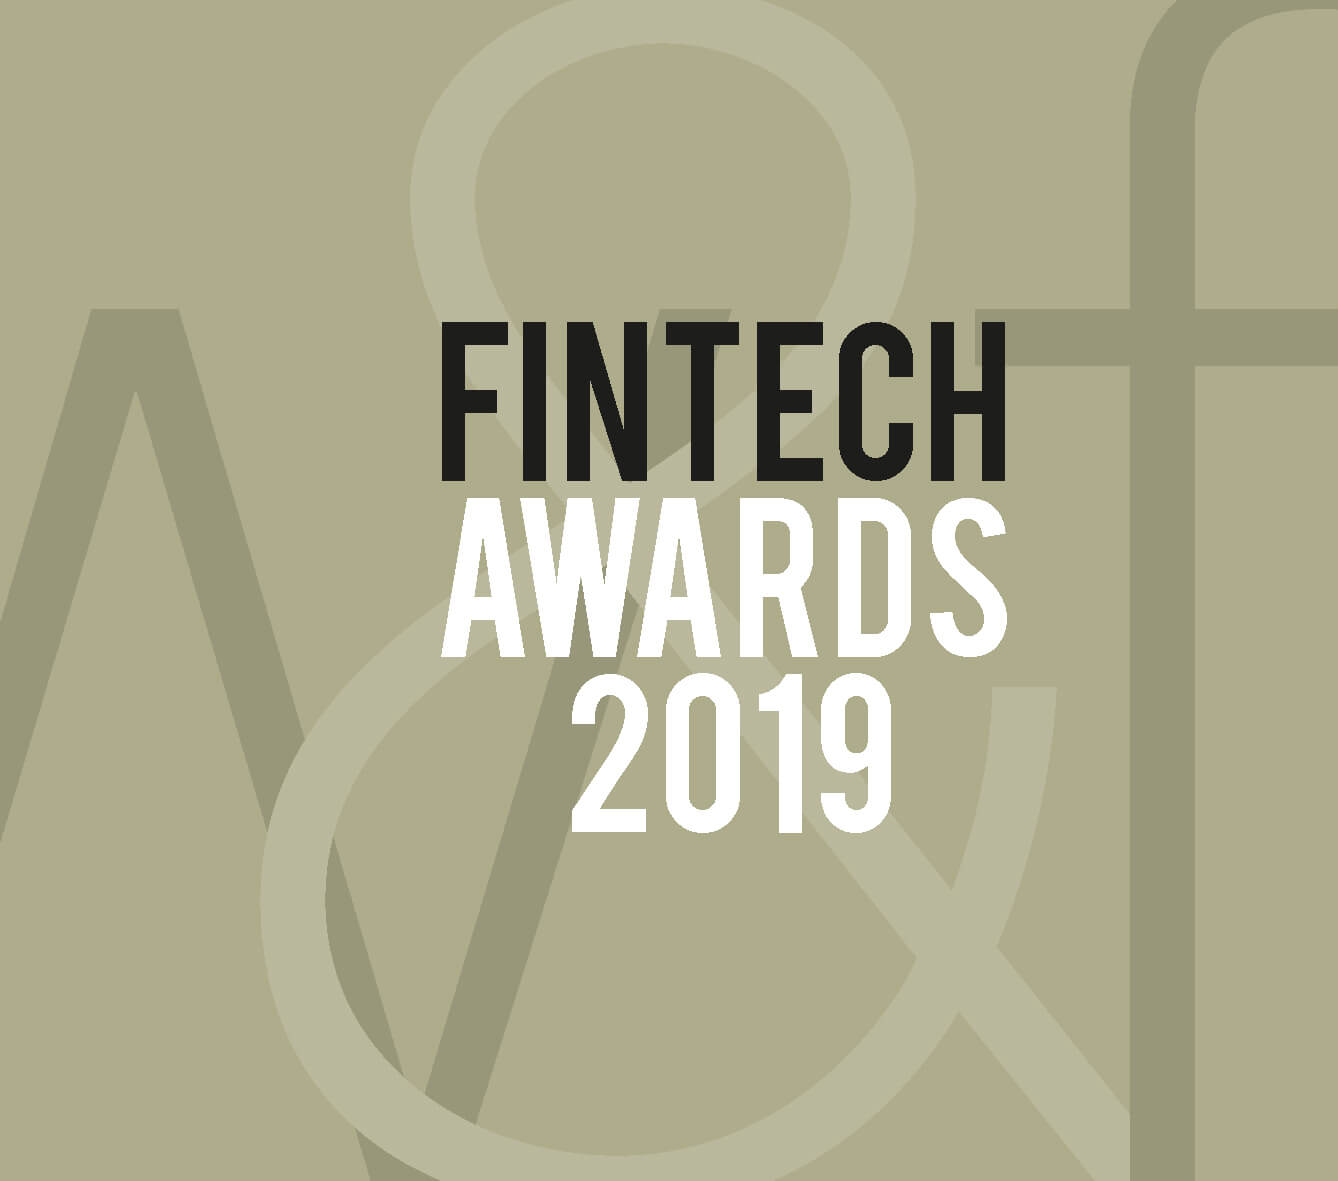 Fintech Awards 2019